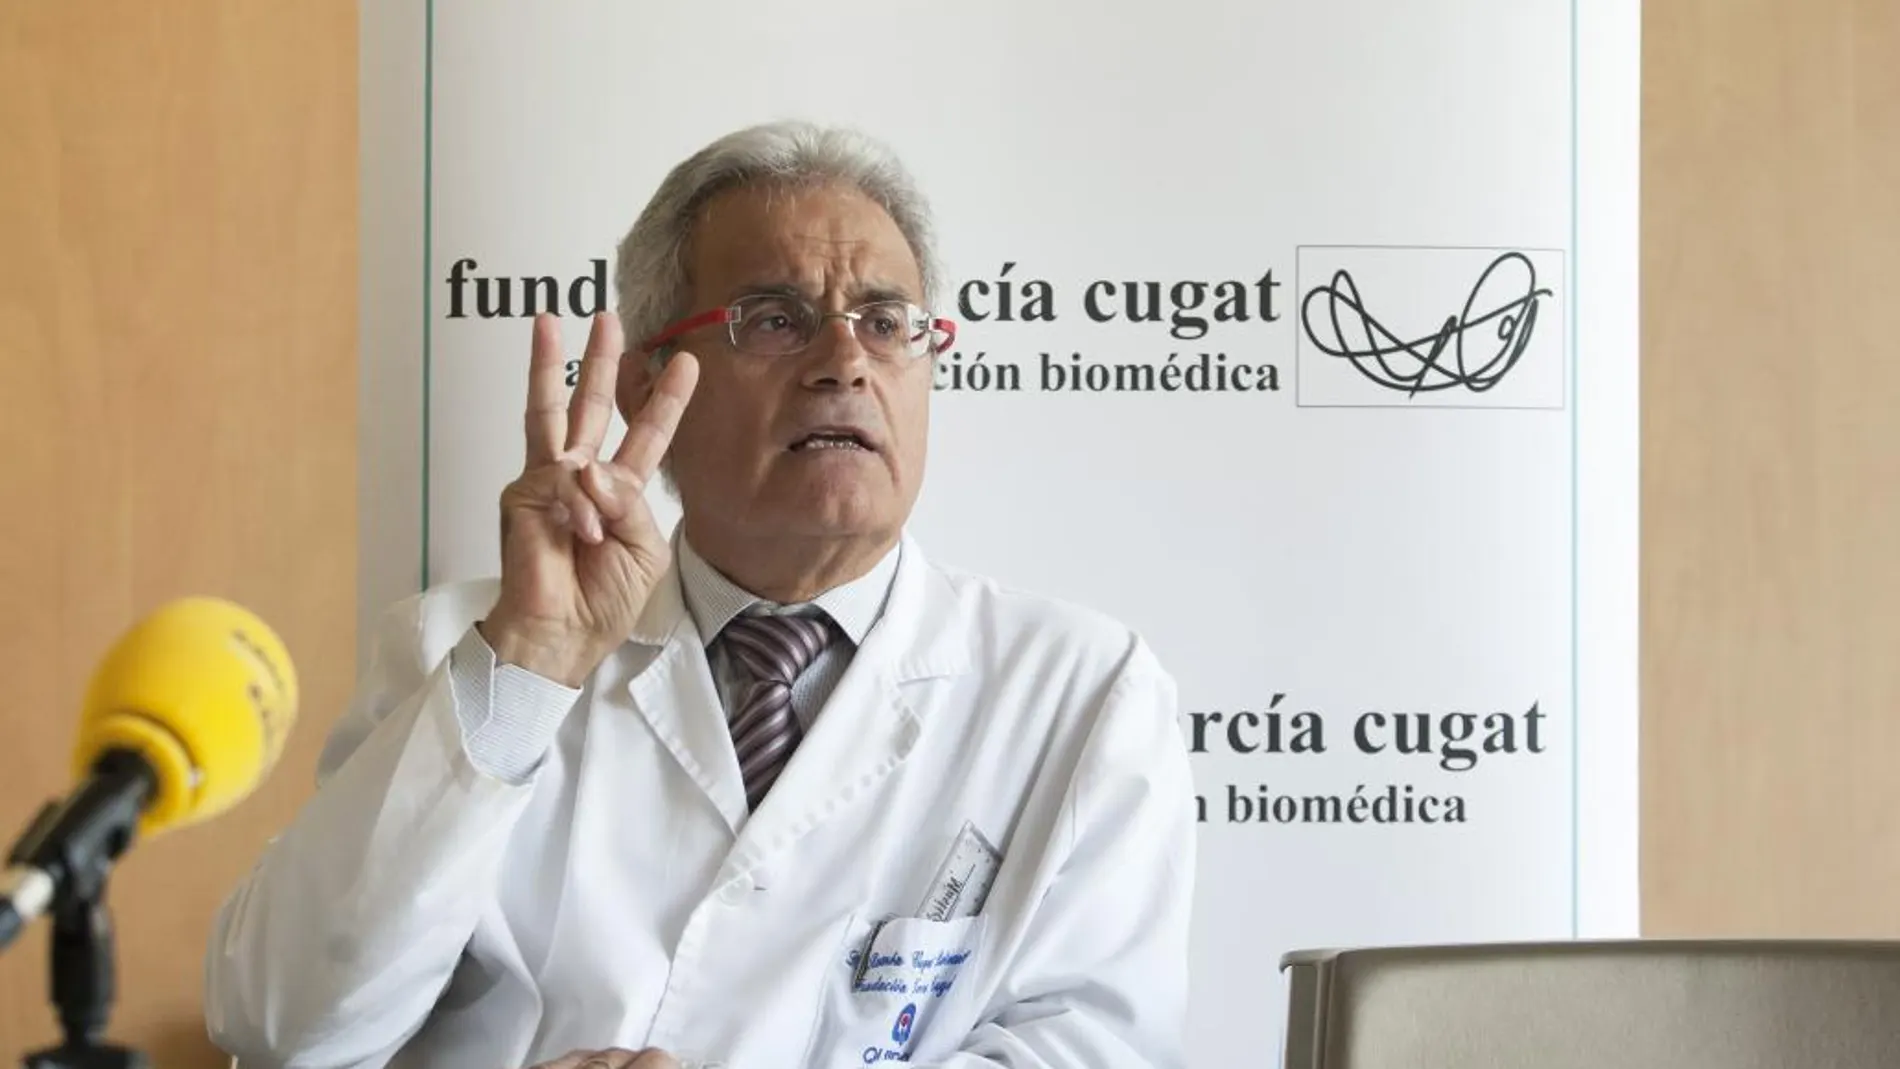 El doctor Ramón Cugat explicó los avances en medicina regenerativa en las V Jornadas de la Fundación García Cugat